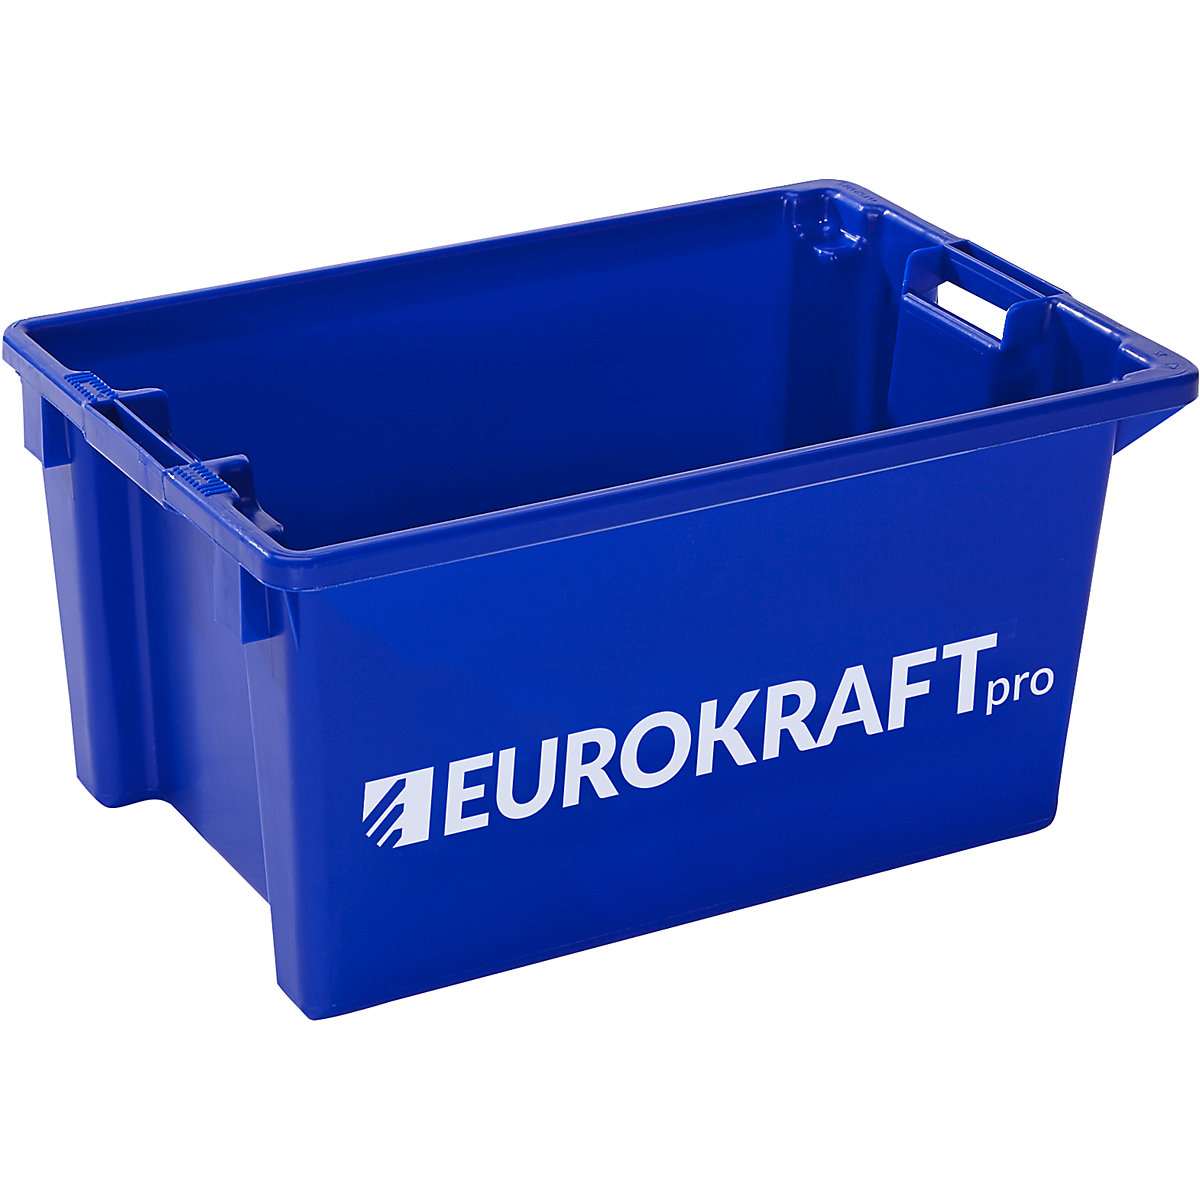 Nestbare stapelbak – eurokraft pro, inhoud 50 l, VE = 3 st., blauw-3